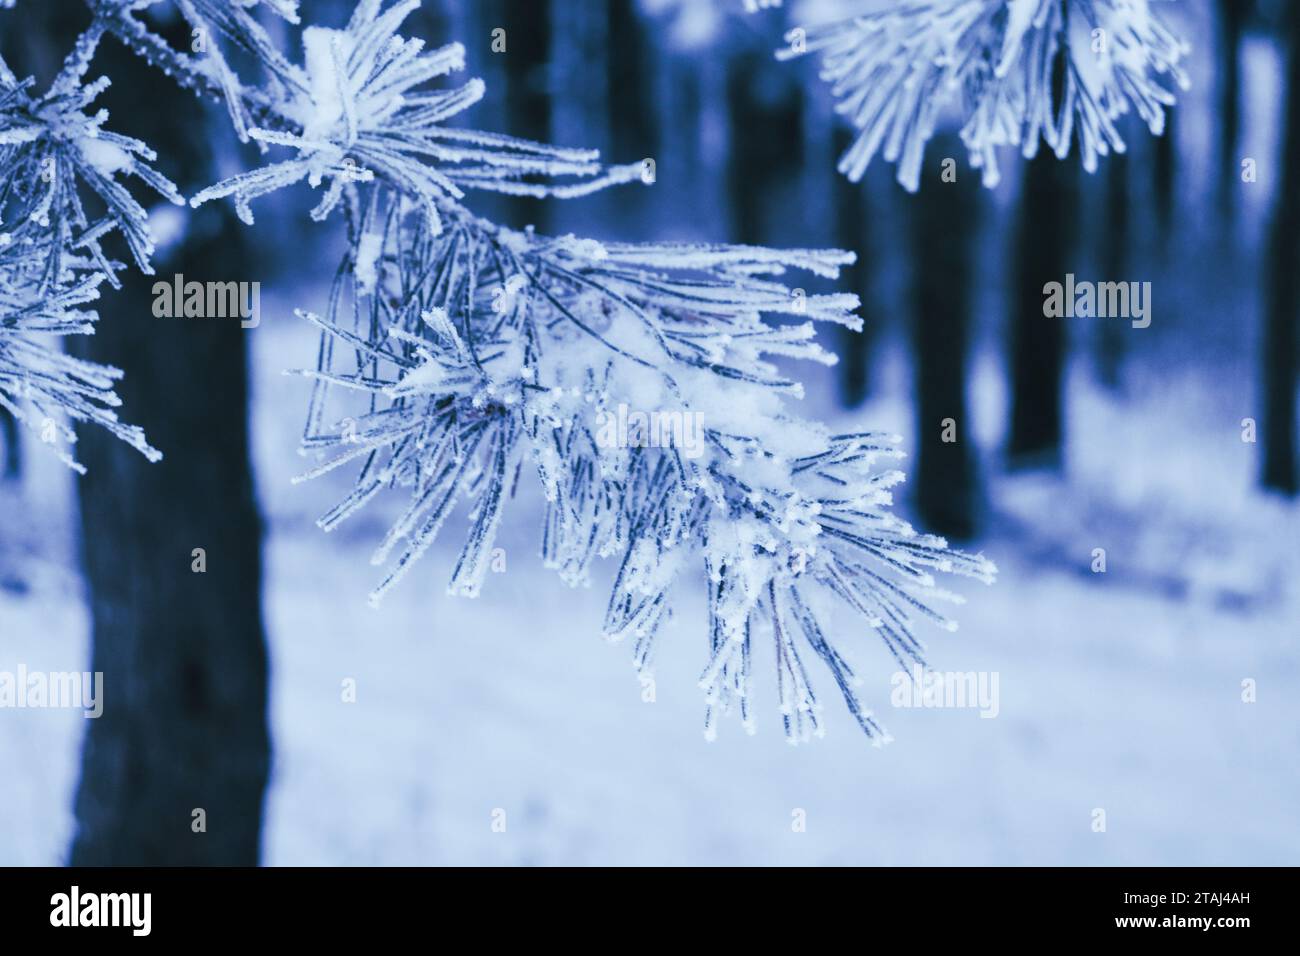 Forêt gelée, bel hiver, neige de cristal sur les arbres, froid et beauté Banque D'Images